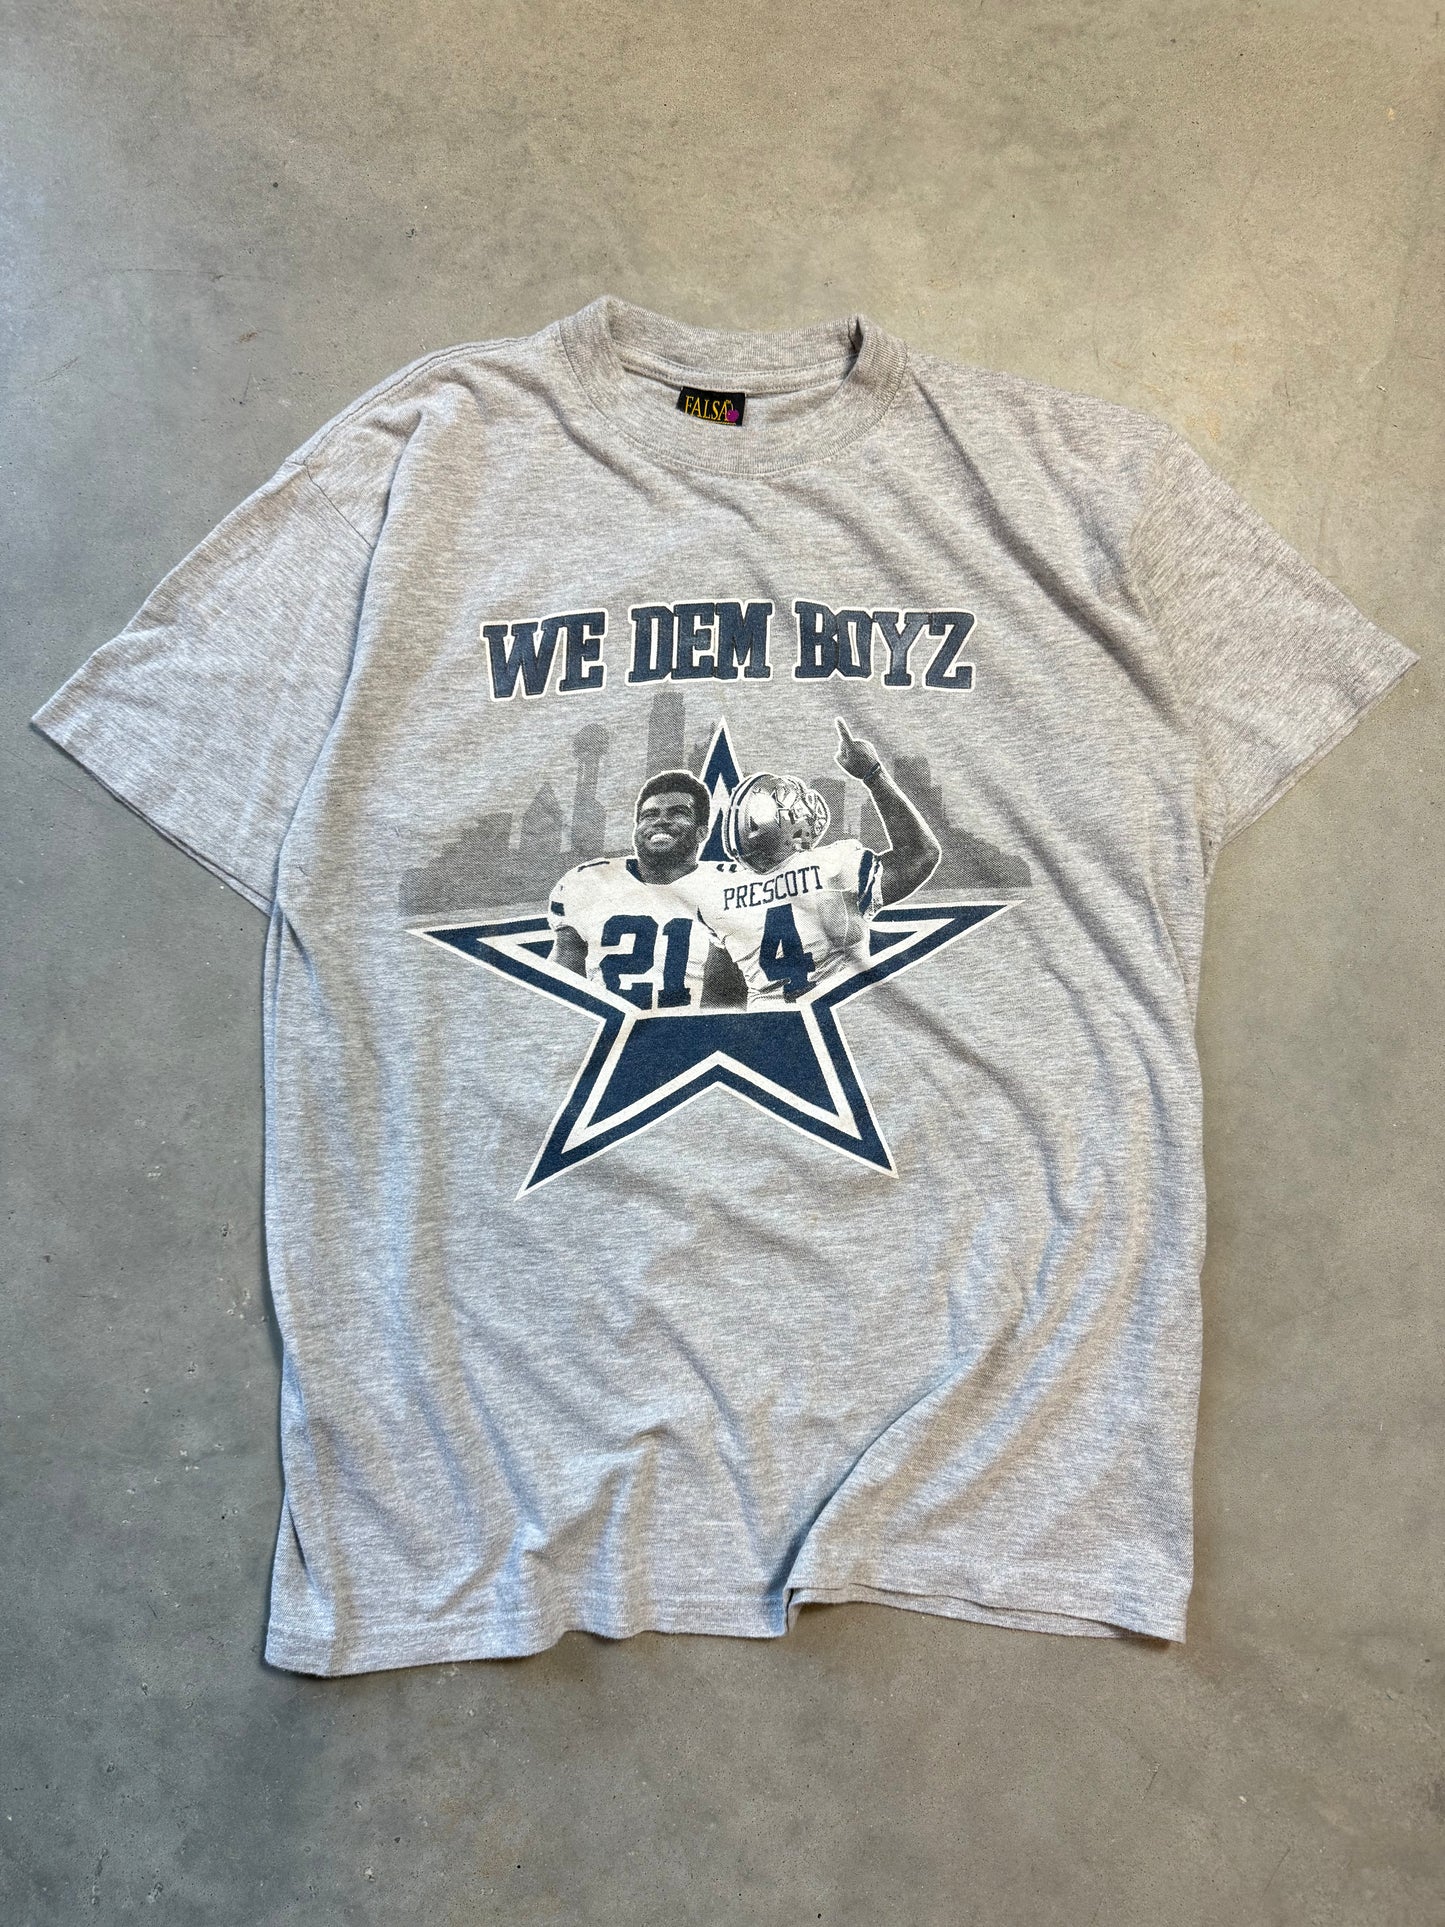 2016 Dallas Cowboys “We Dem Boyz” NFL Tee (Large)